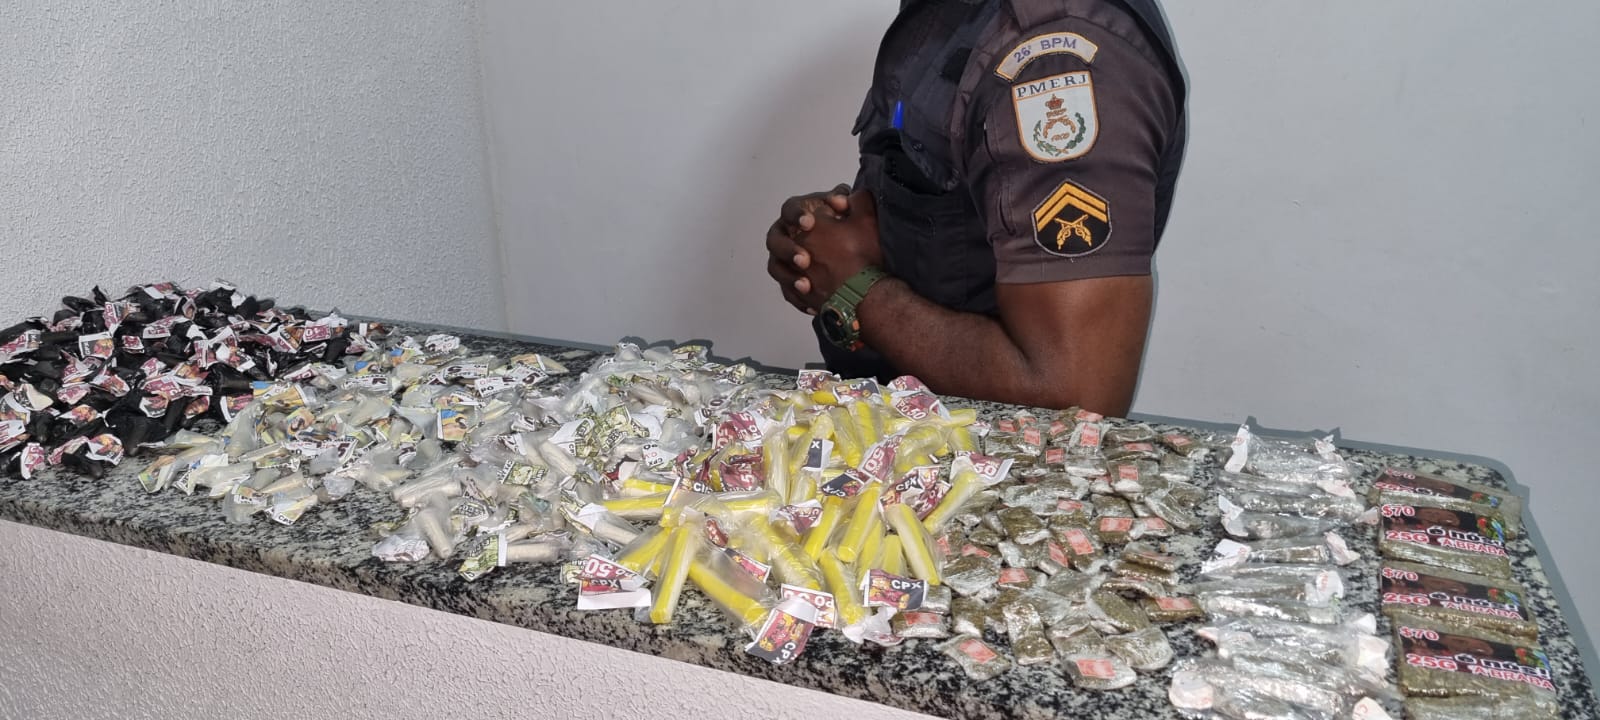 PMs prendem homem vendendo drogas em Araras 